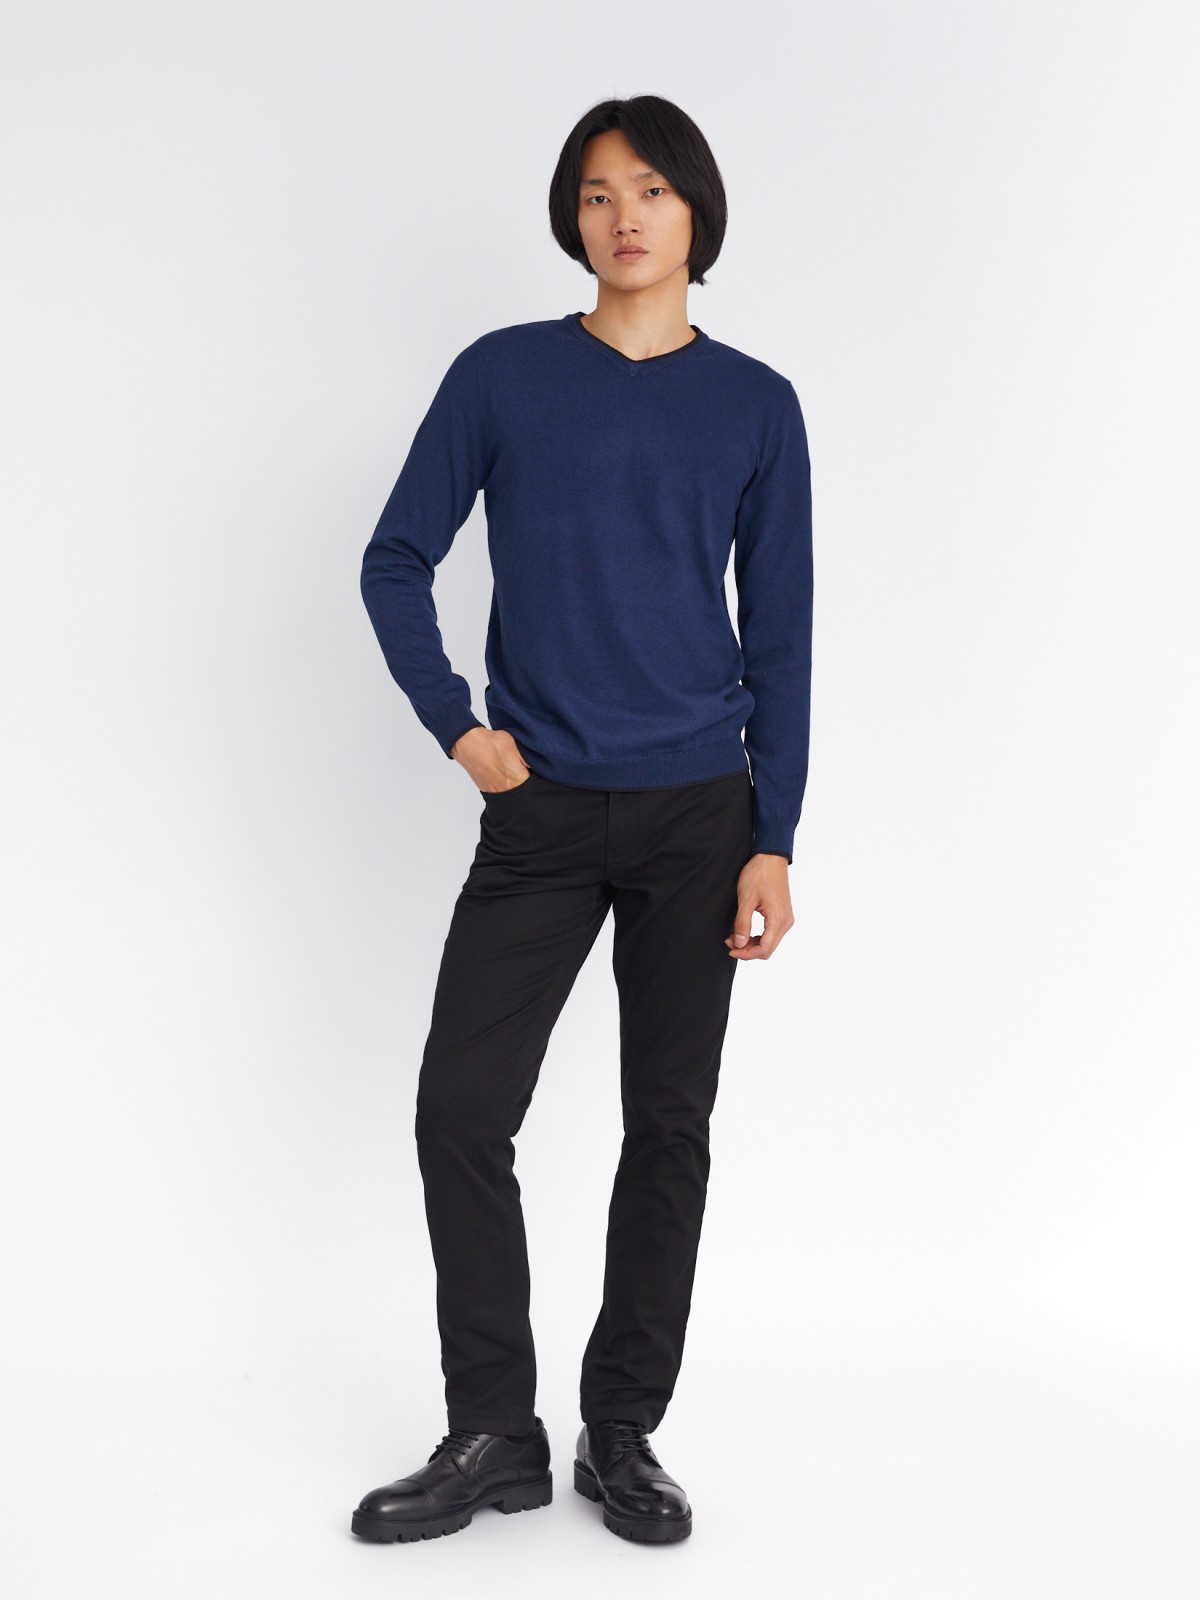 Тонкий трикотажный пуловер с треугольным вырезом и длинным рукавом zolla 213336165022, цвет синий, размер M - фото 2